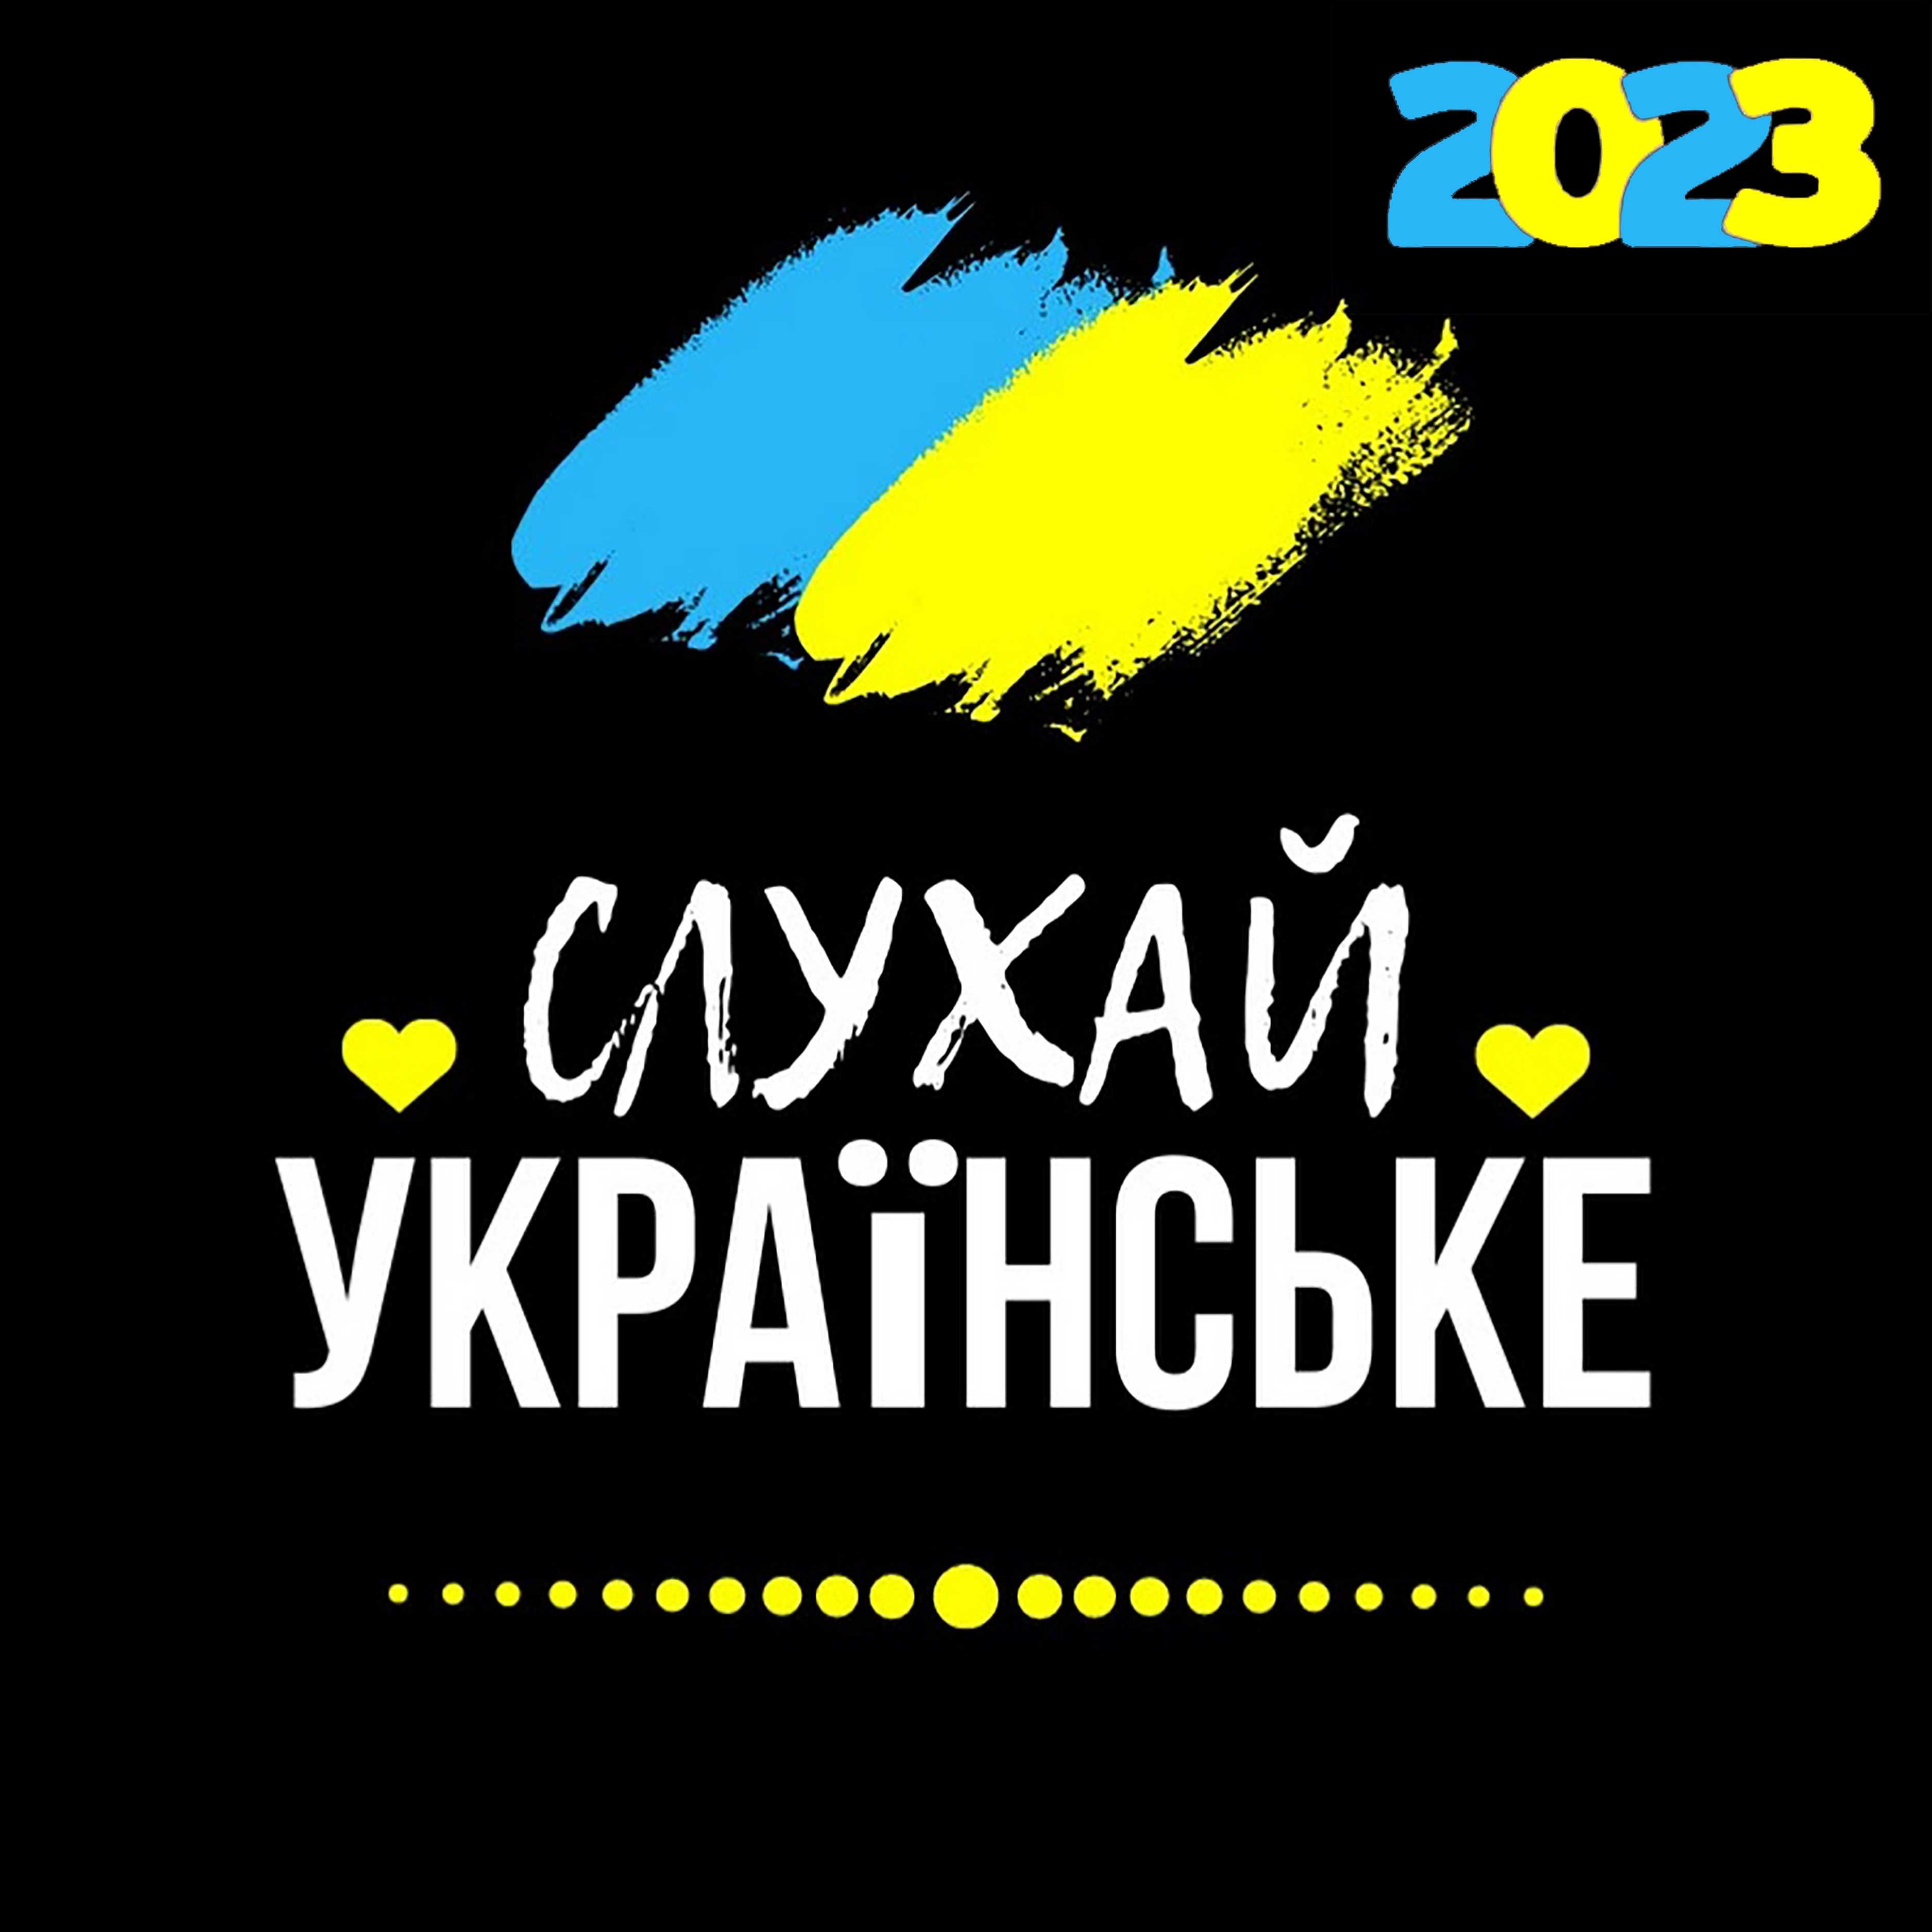 МУЗИКА: Сучасні українські пісні, диски (Нові), mp3, 2023!